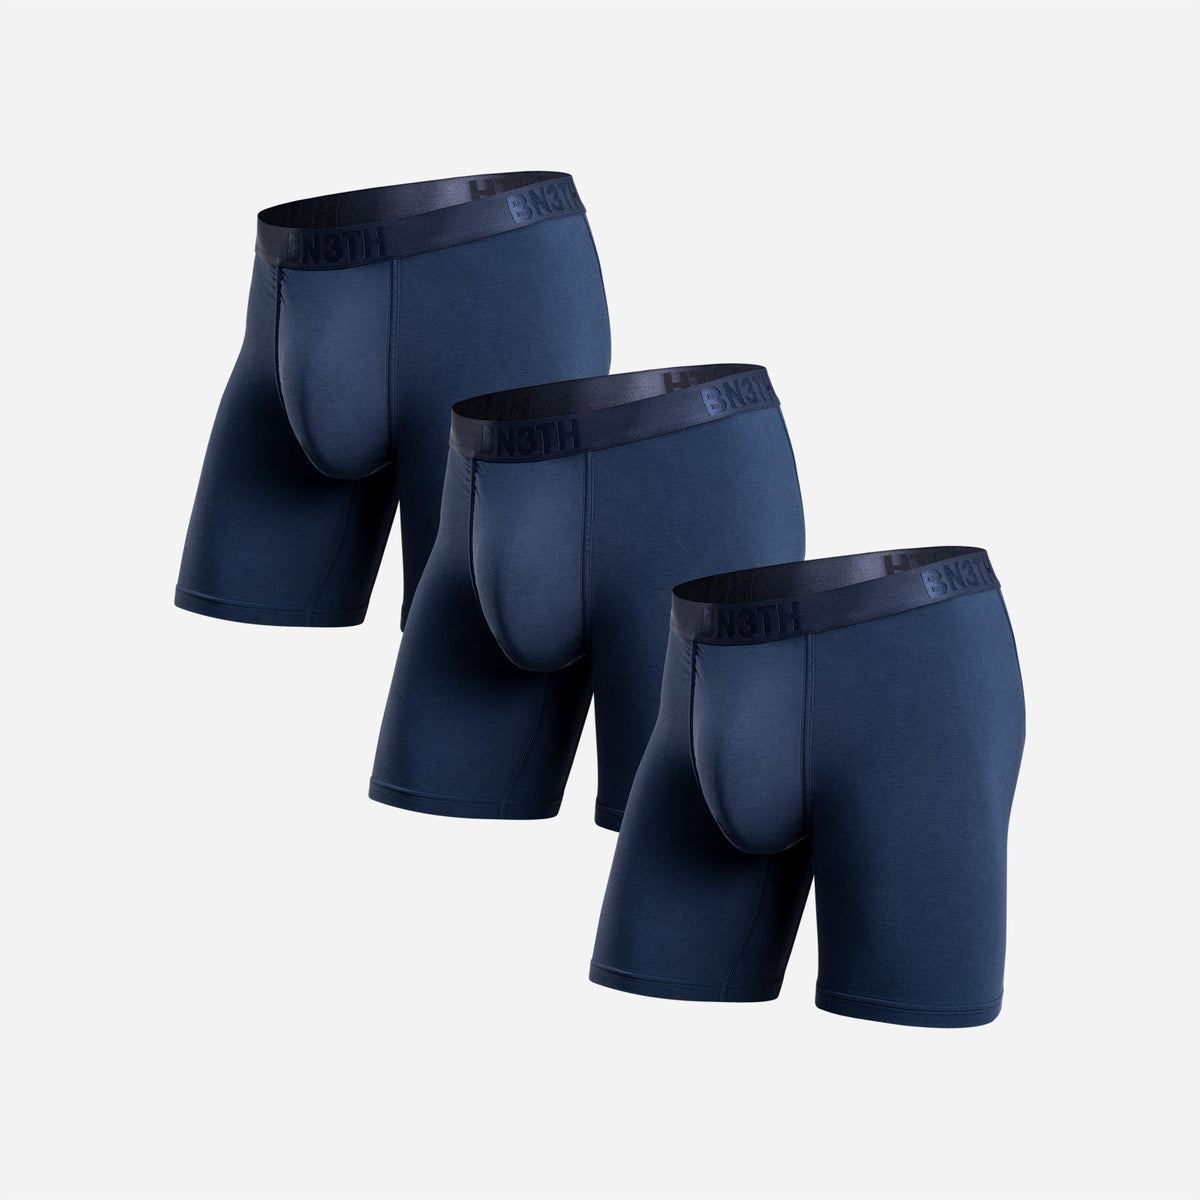  BN3TH Men's Pro 2.0 Premium Underwear with Pouch